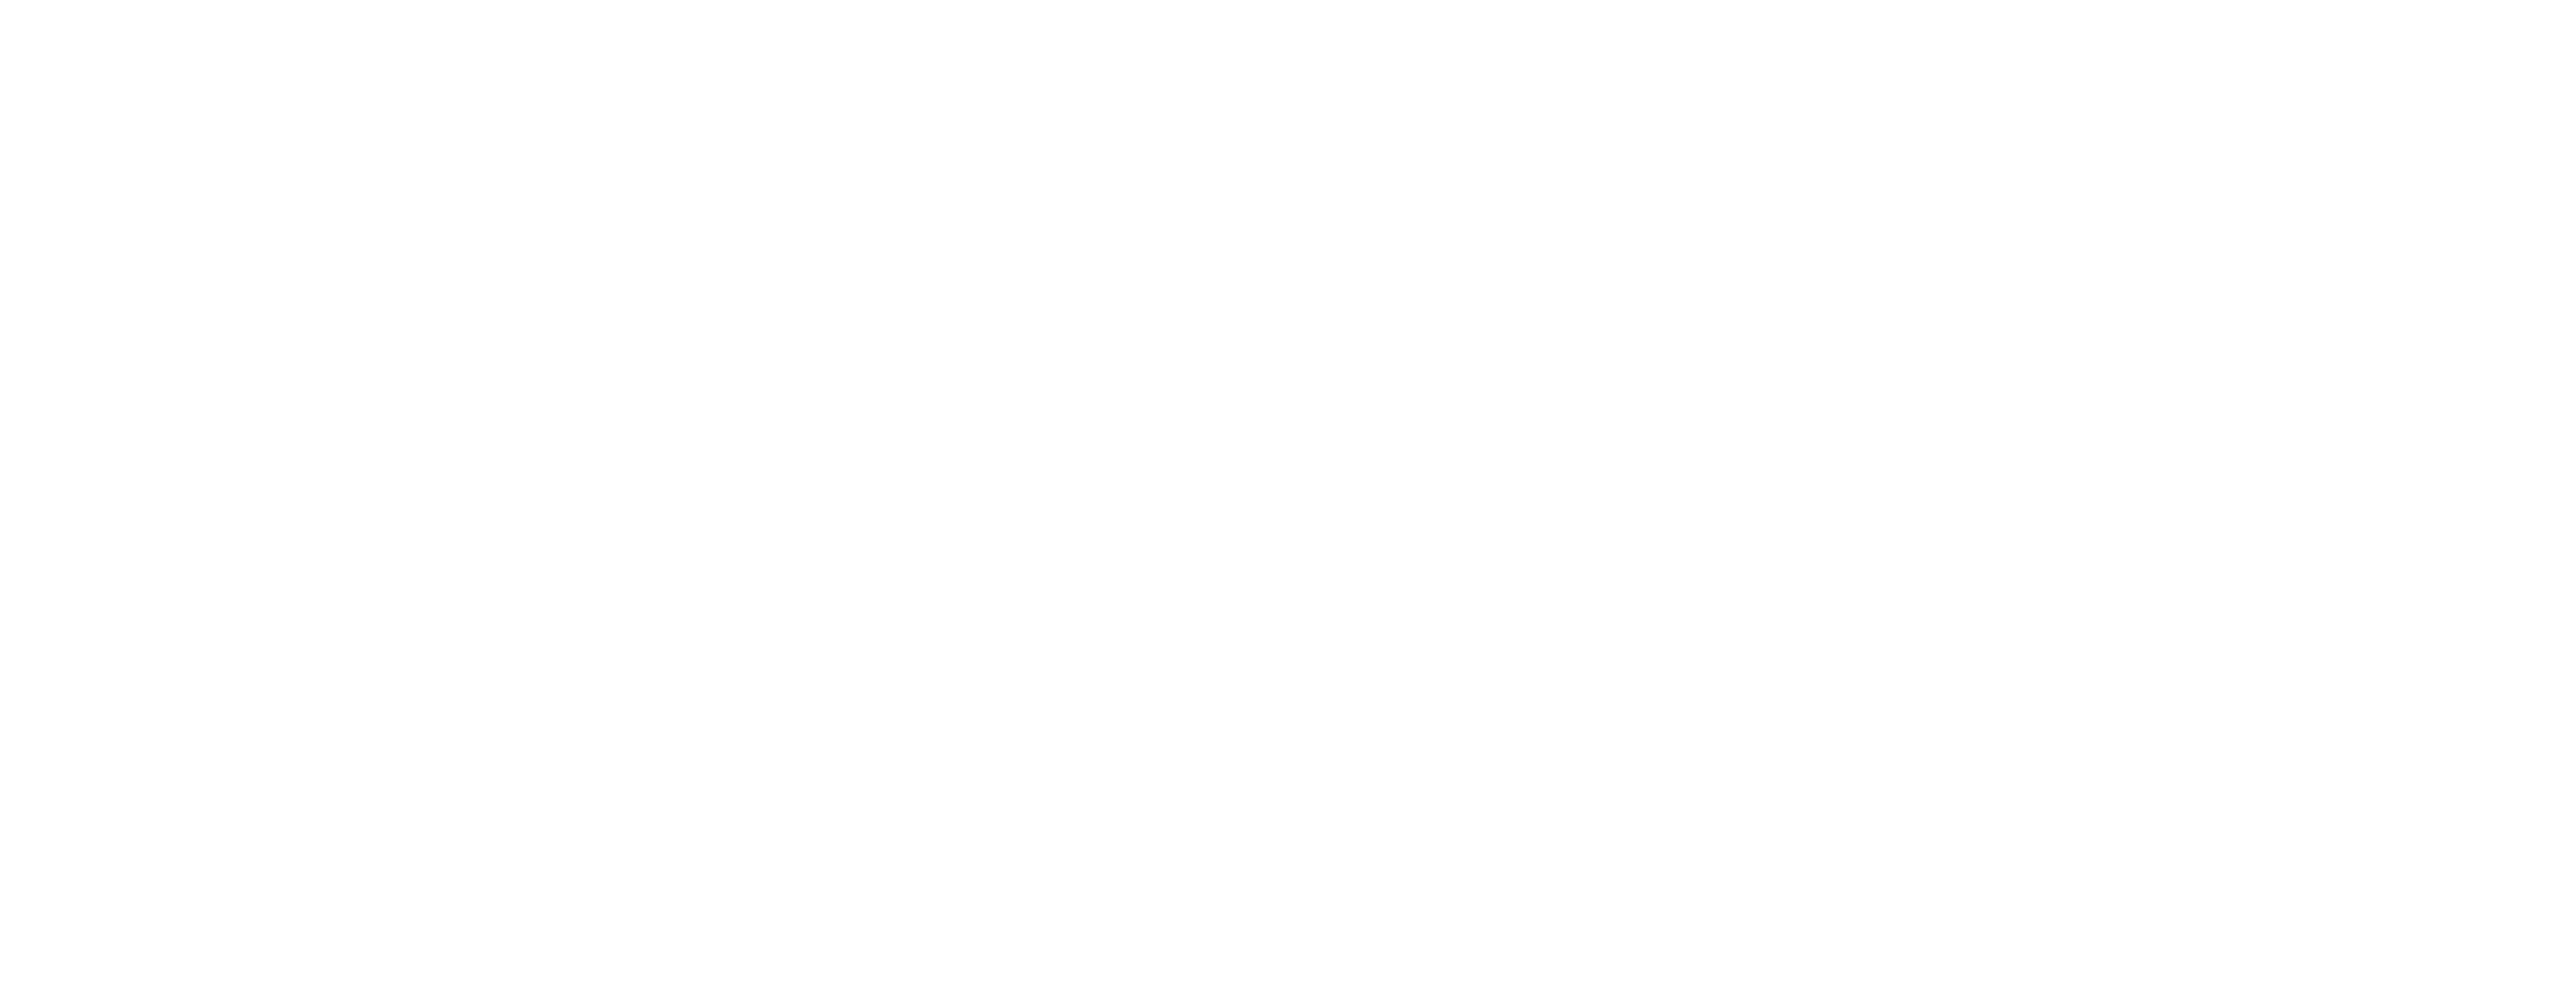 C. Caramanico & Sons, Inc.